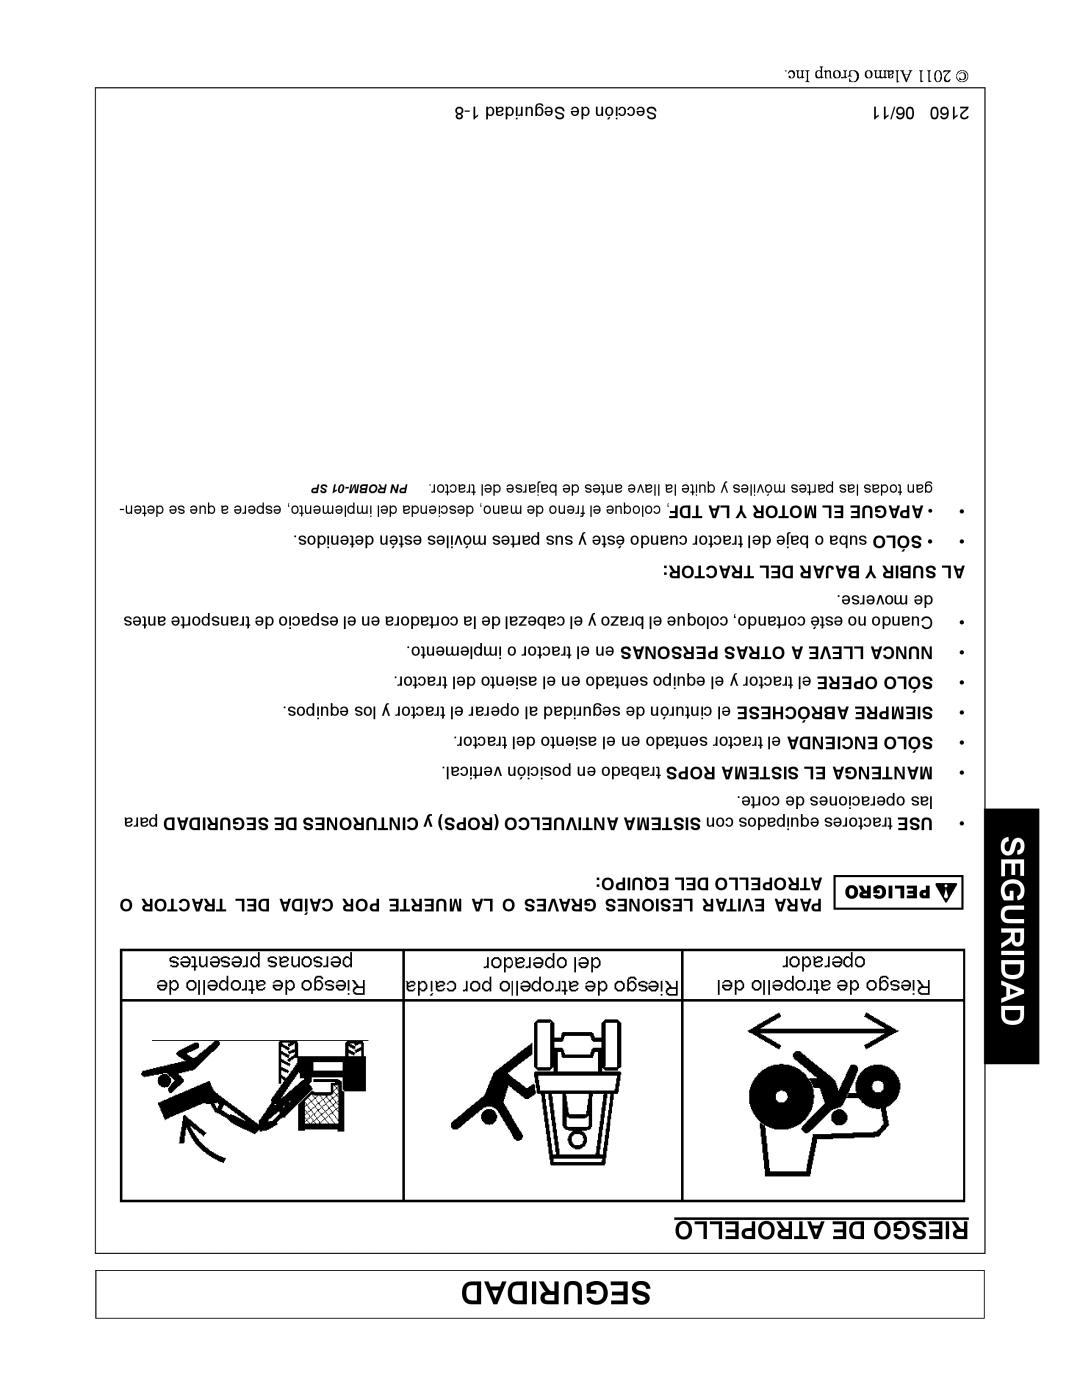 Servis-Rhino 2160 manual Atropello De Riesgo, Seguridad, Tractor Del Bajar Y Subir Al, Equipo Del Atropello 